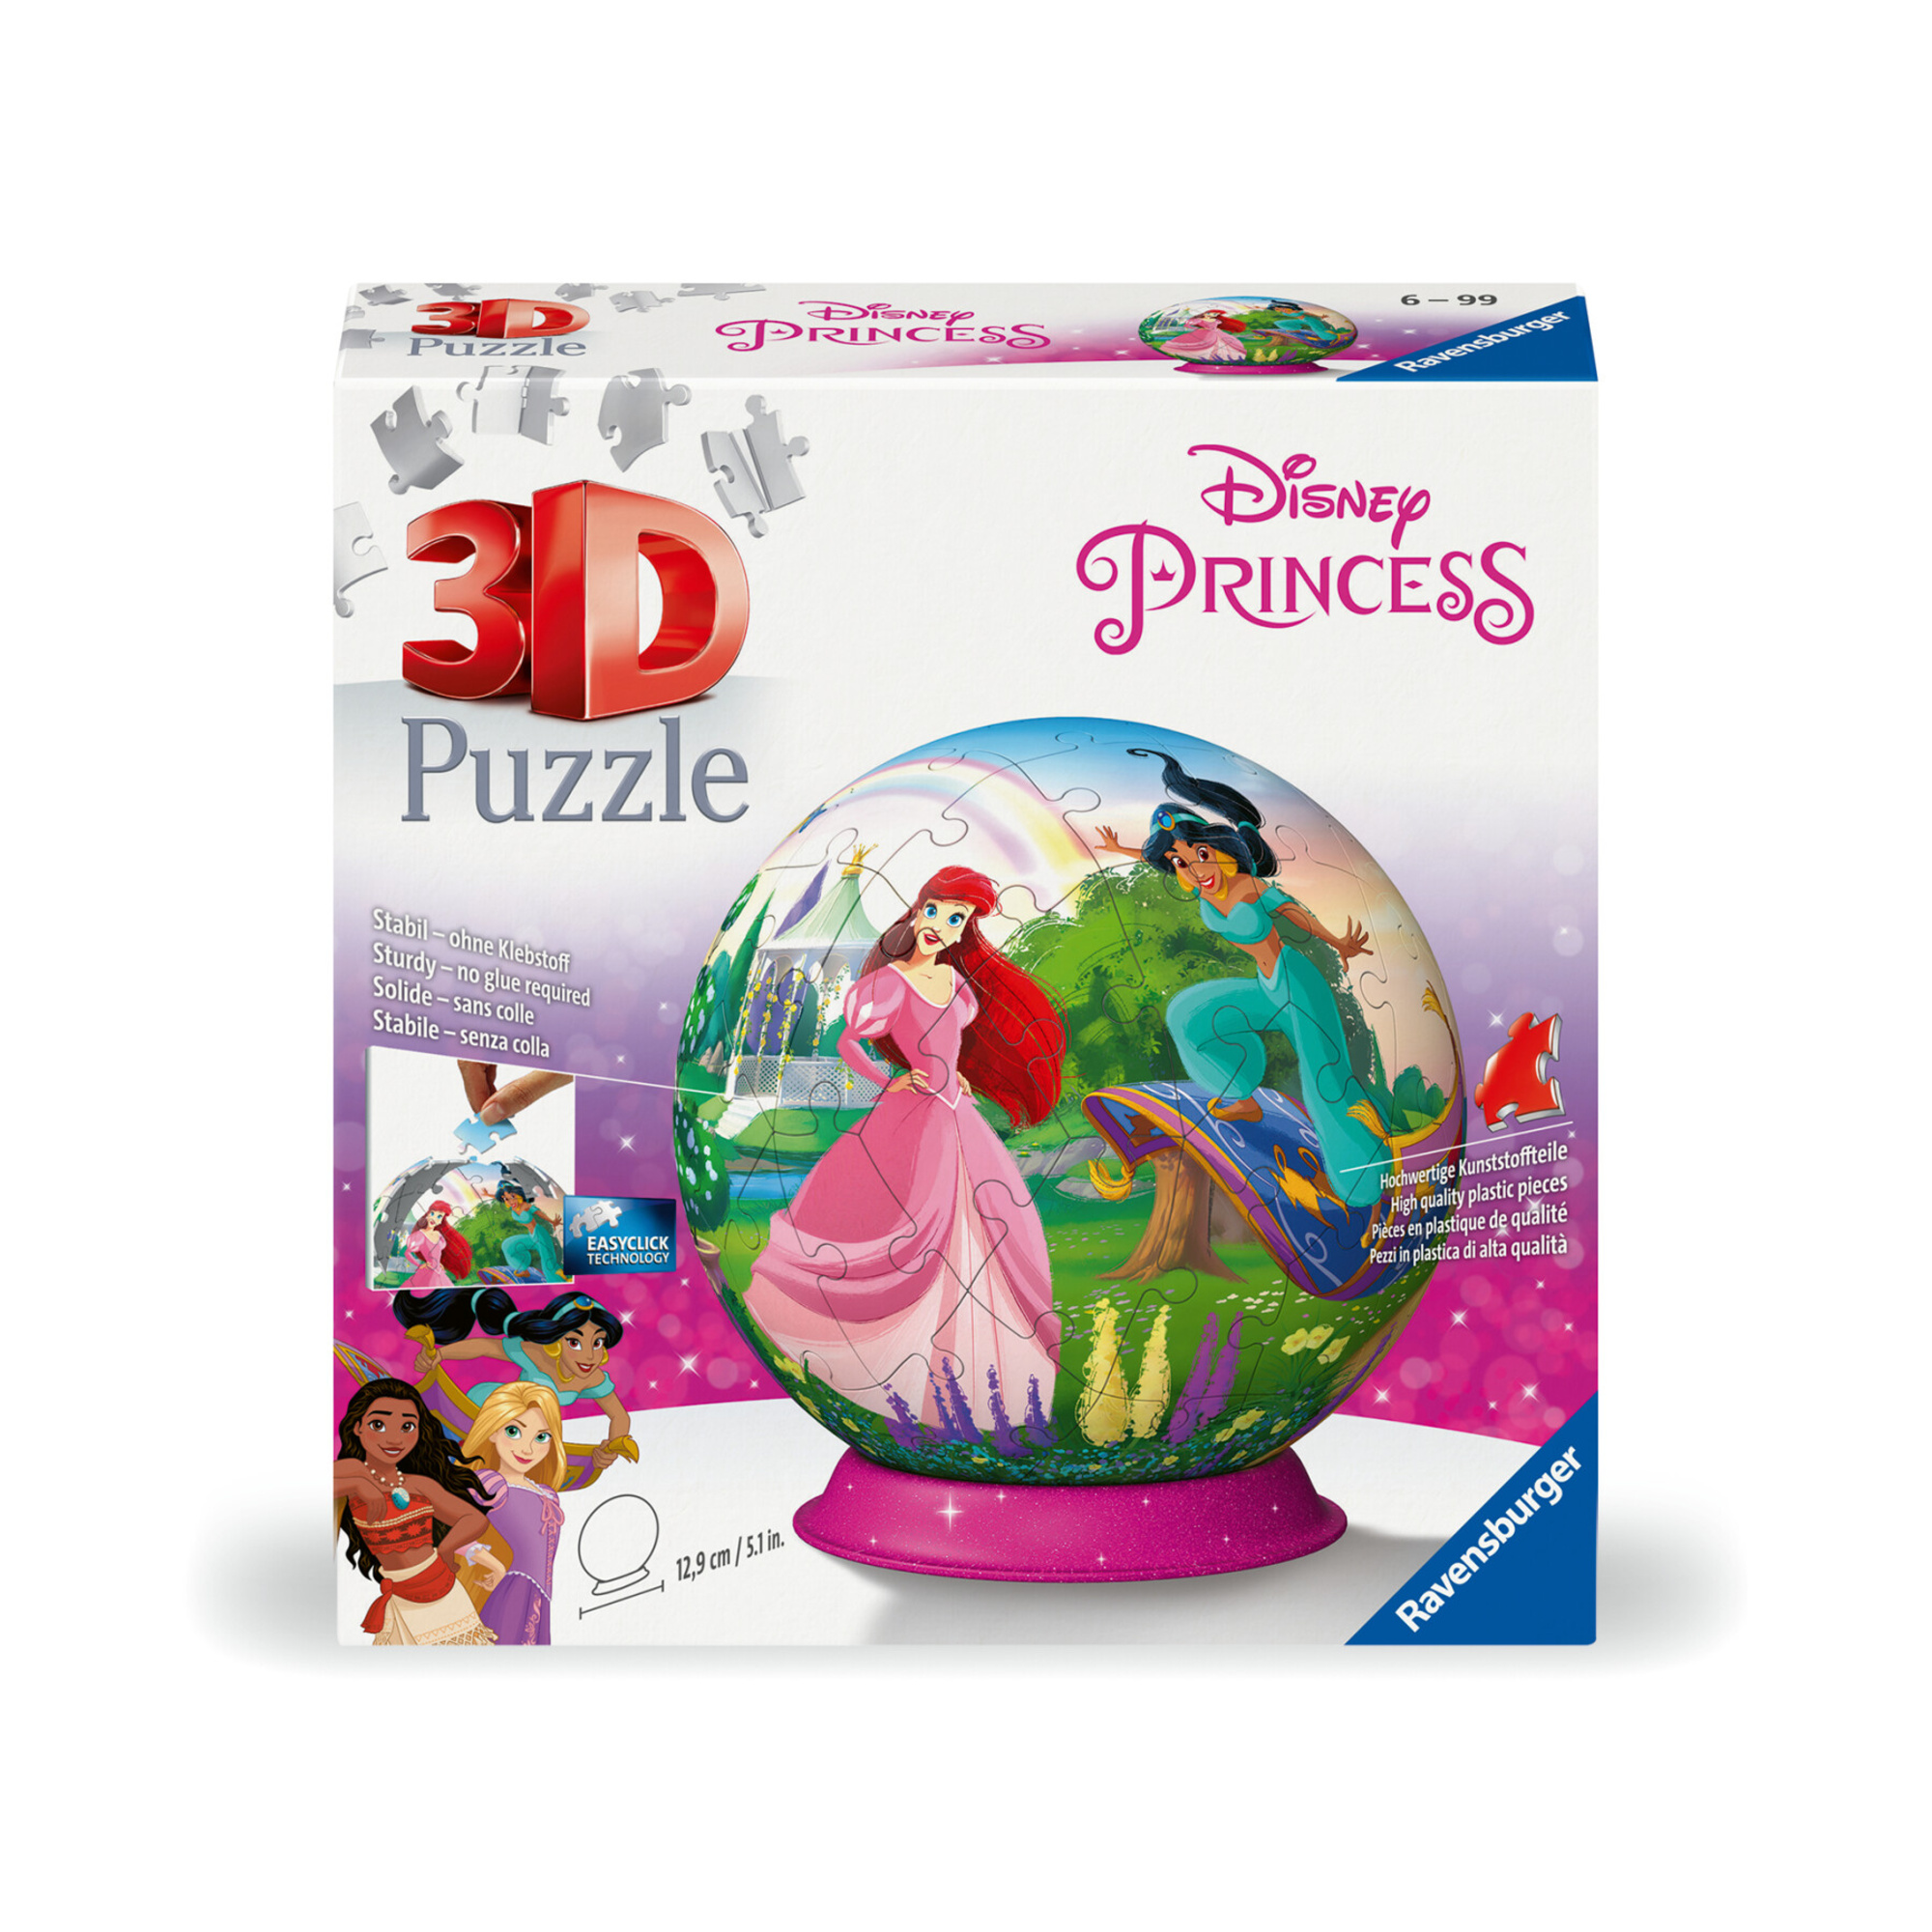 Ravensburger - 3d puzzle puzzle ball disney princess, 72 pezzi, 6+ anni - DISNEY PRINCESS, RAVENSBURGER 3D PUZZLE